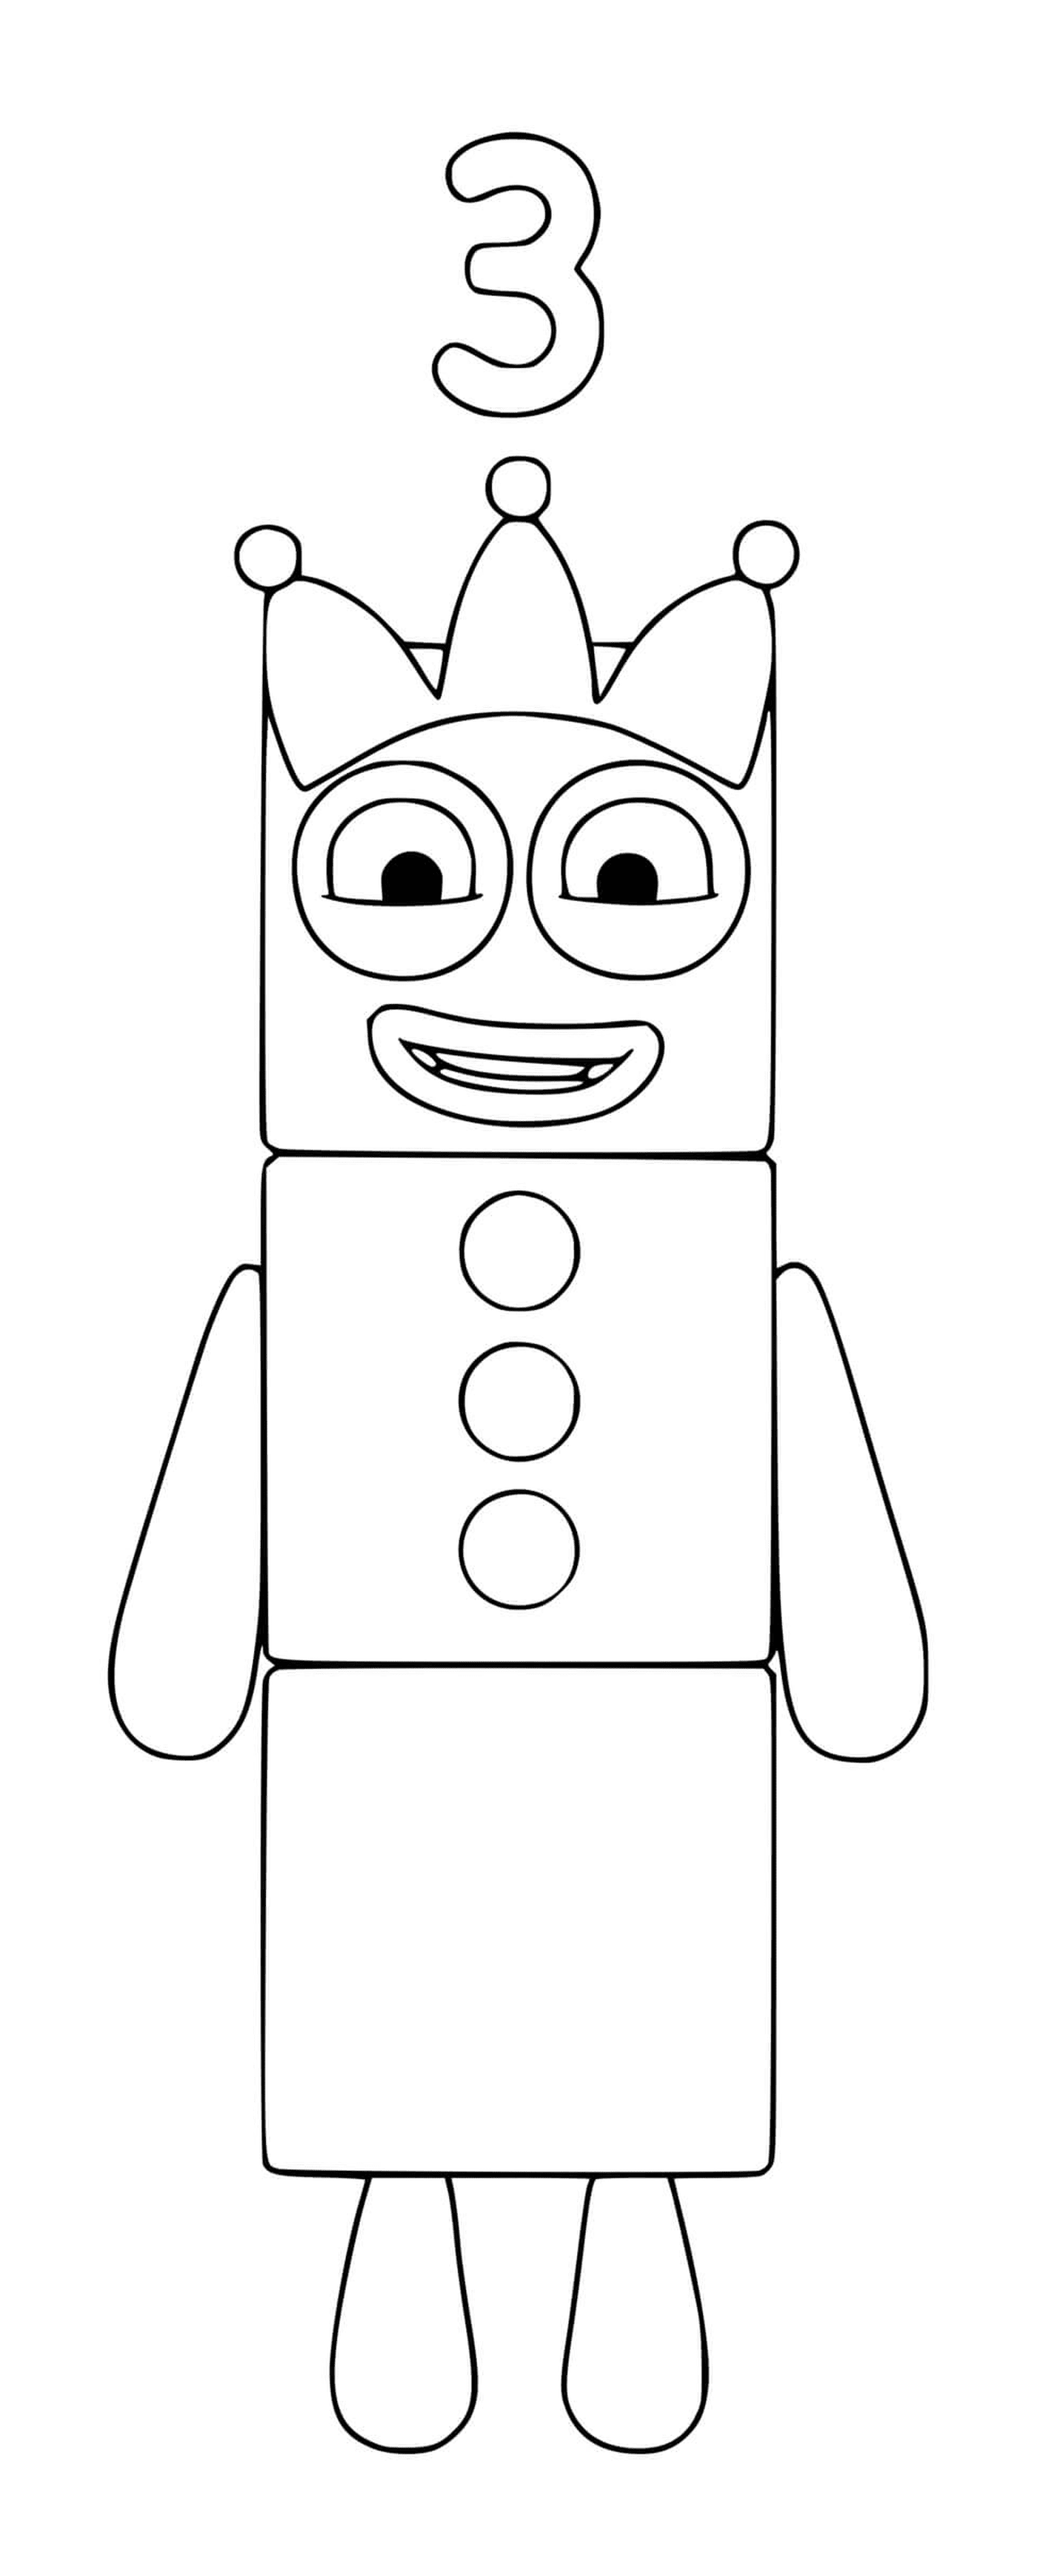   Numéro 3 des Numberblocks, un robot jouet 